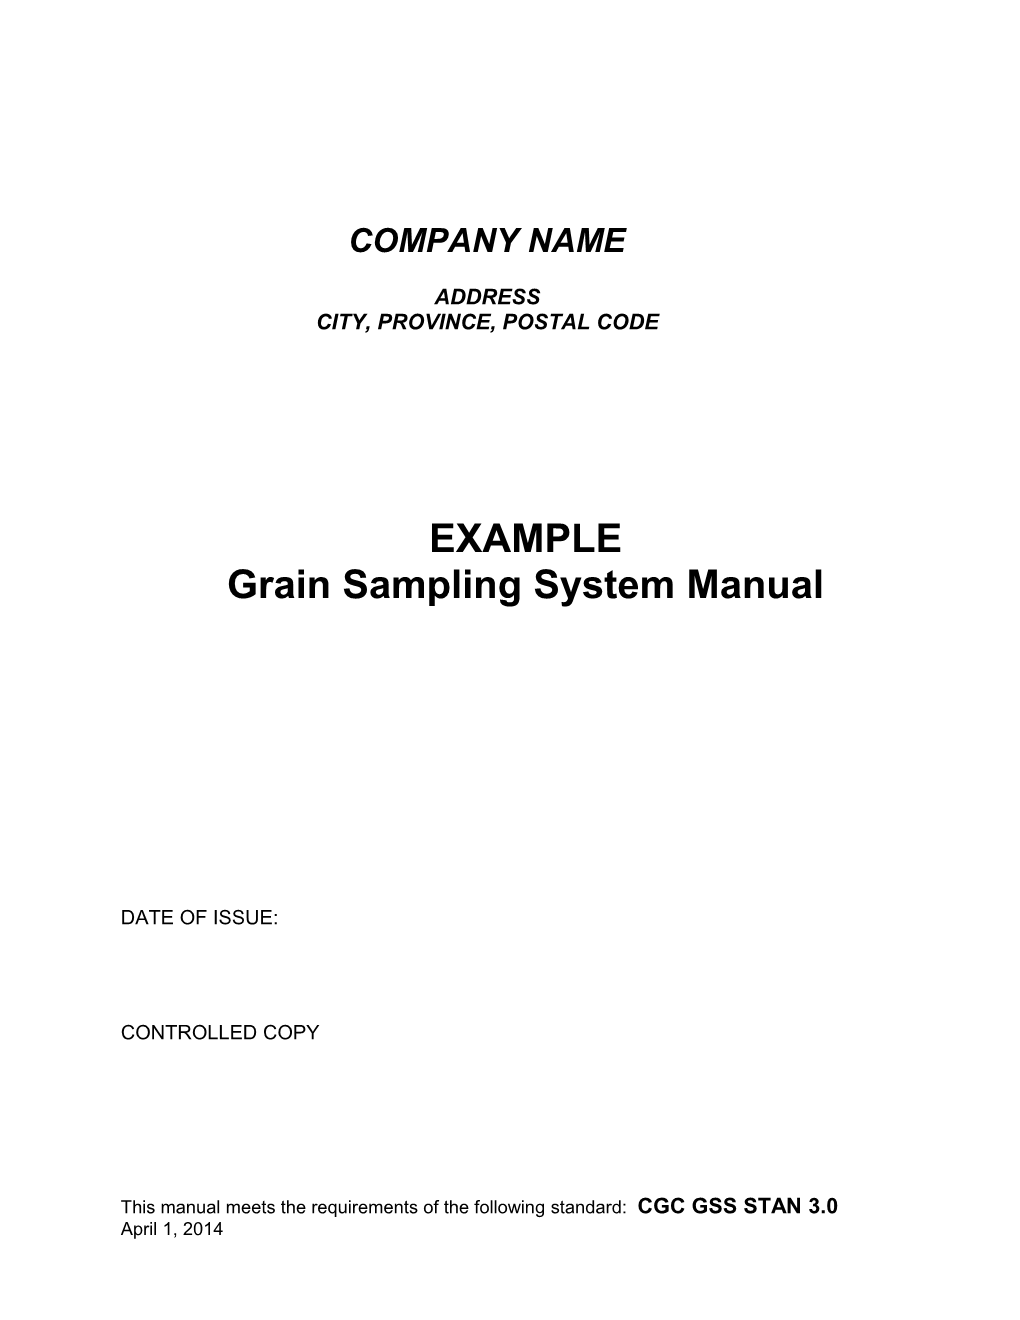 EXAMPLE : Grain Sampling System Manual